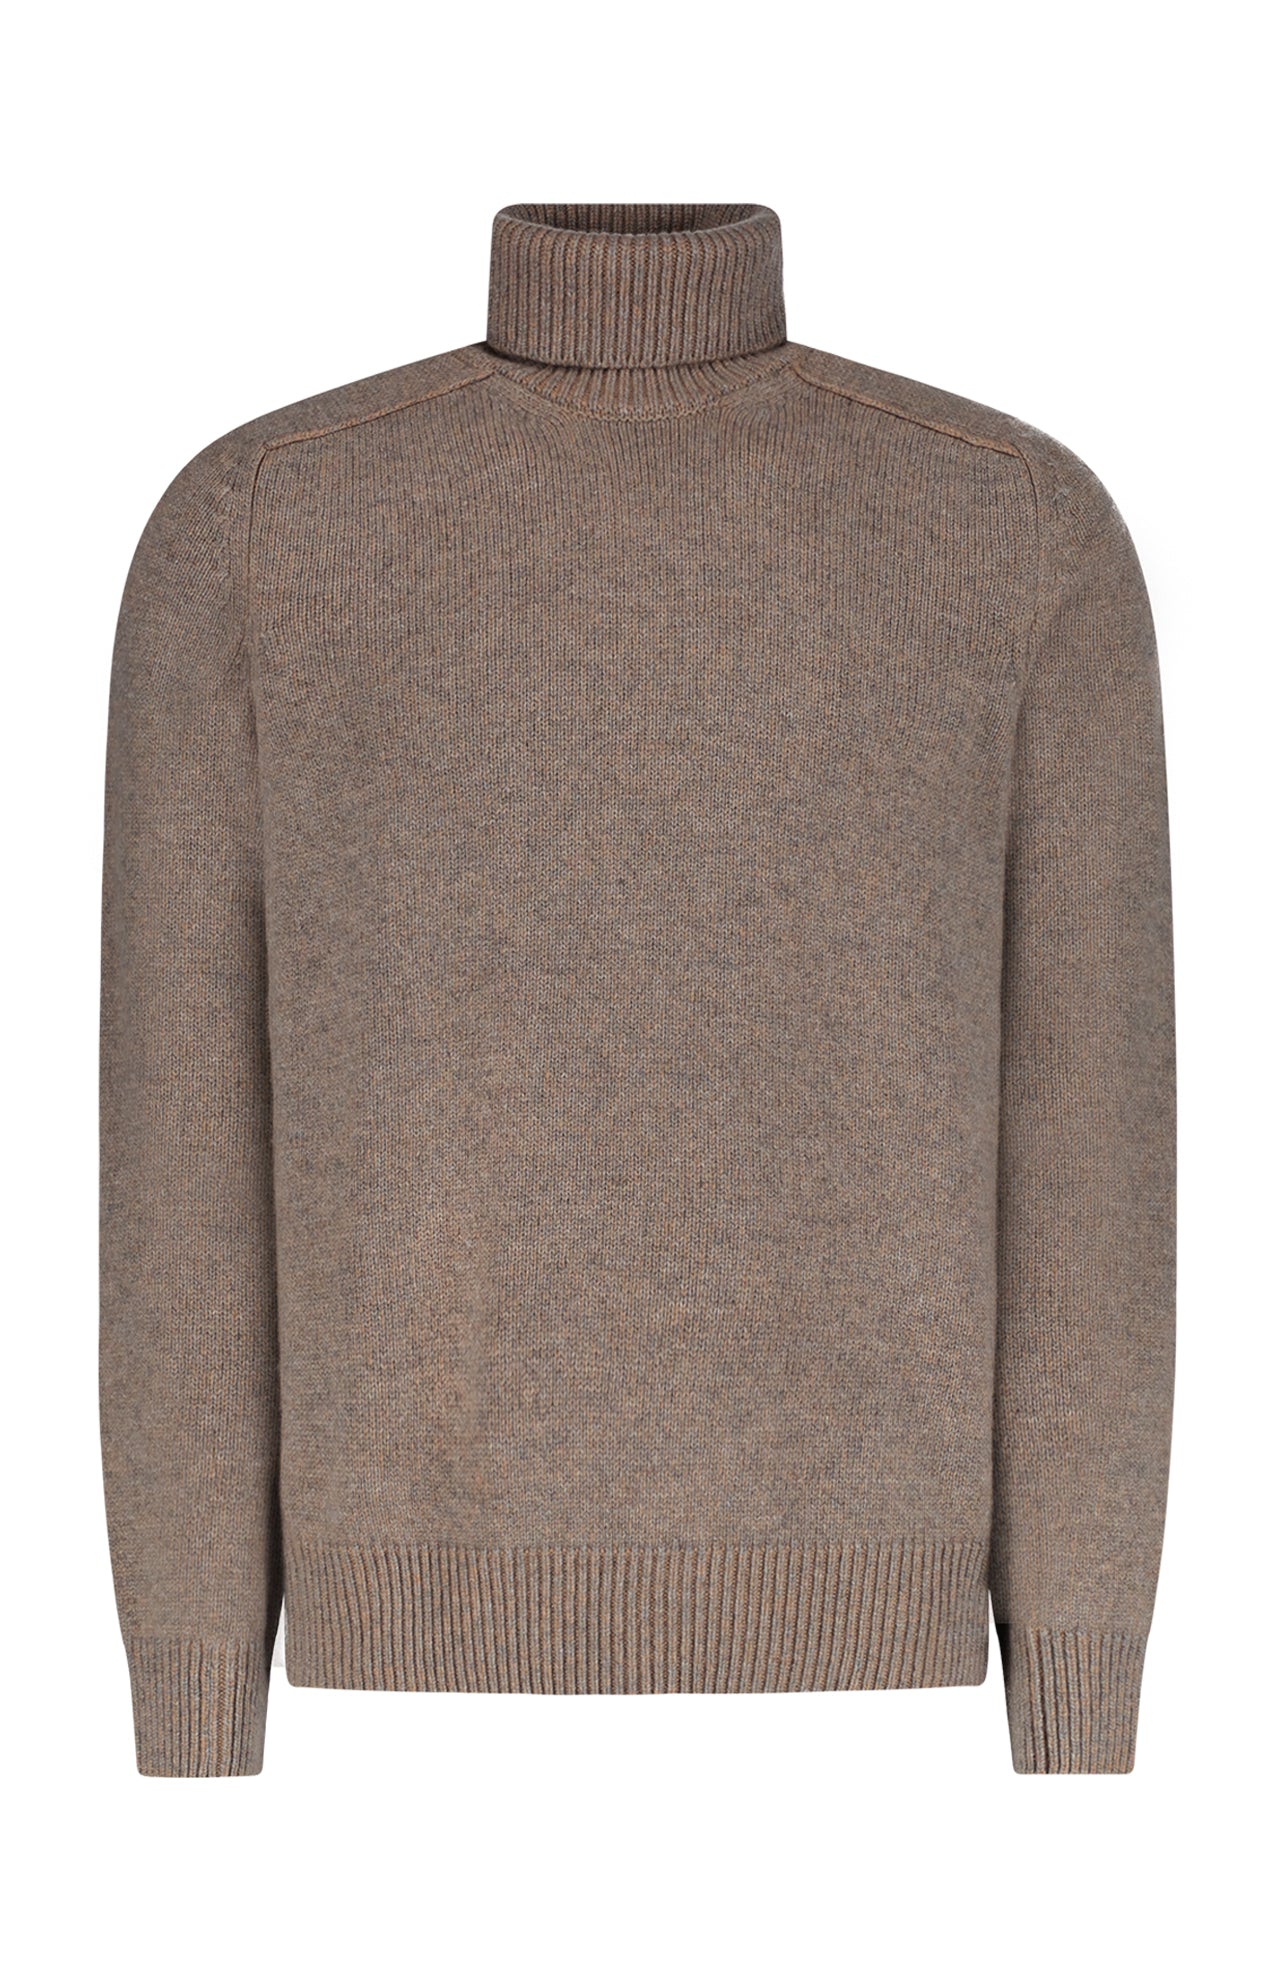 extreme cashmere 100% turtleneck sweater n°20 oversize xtra